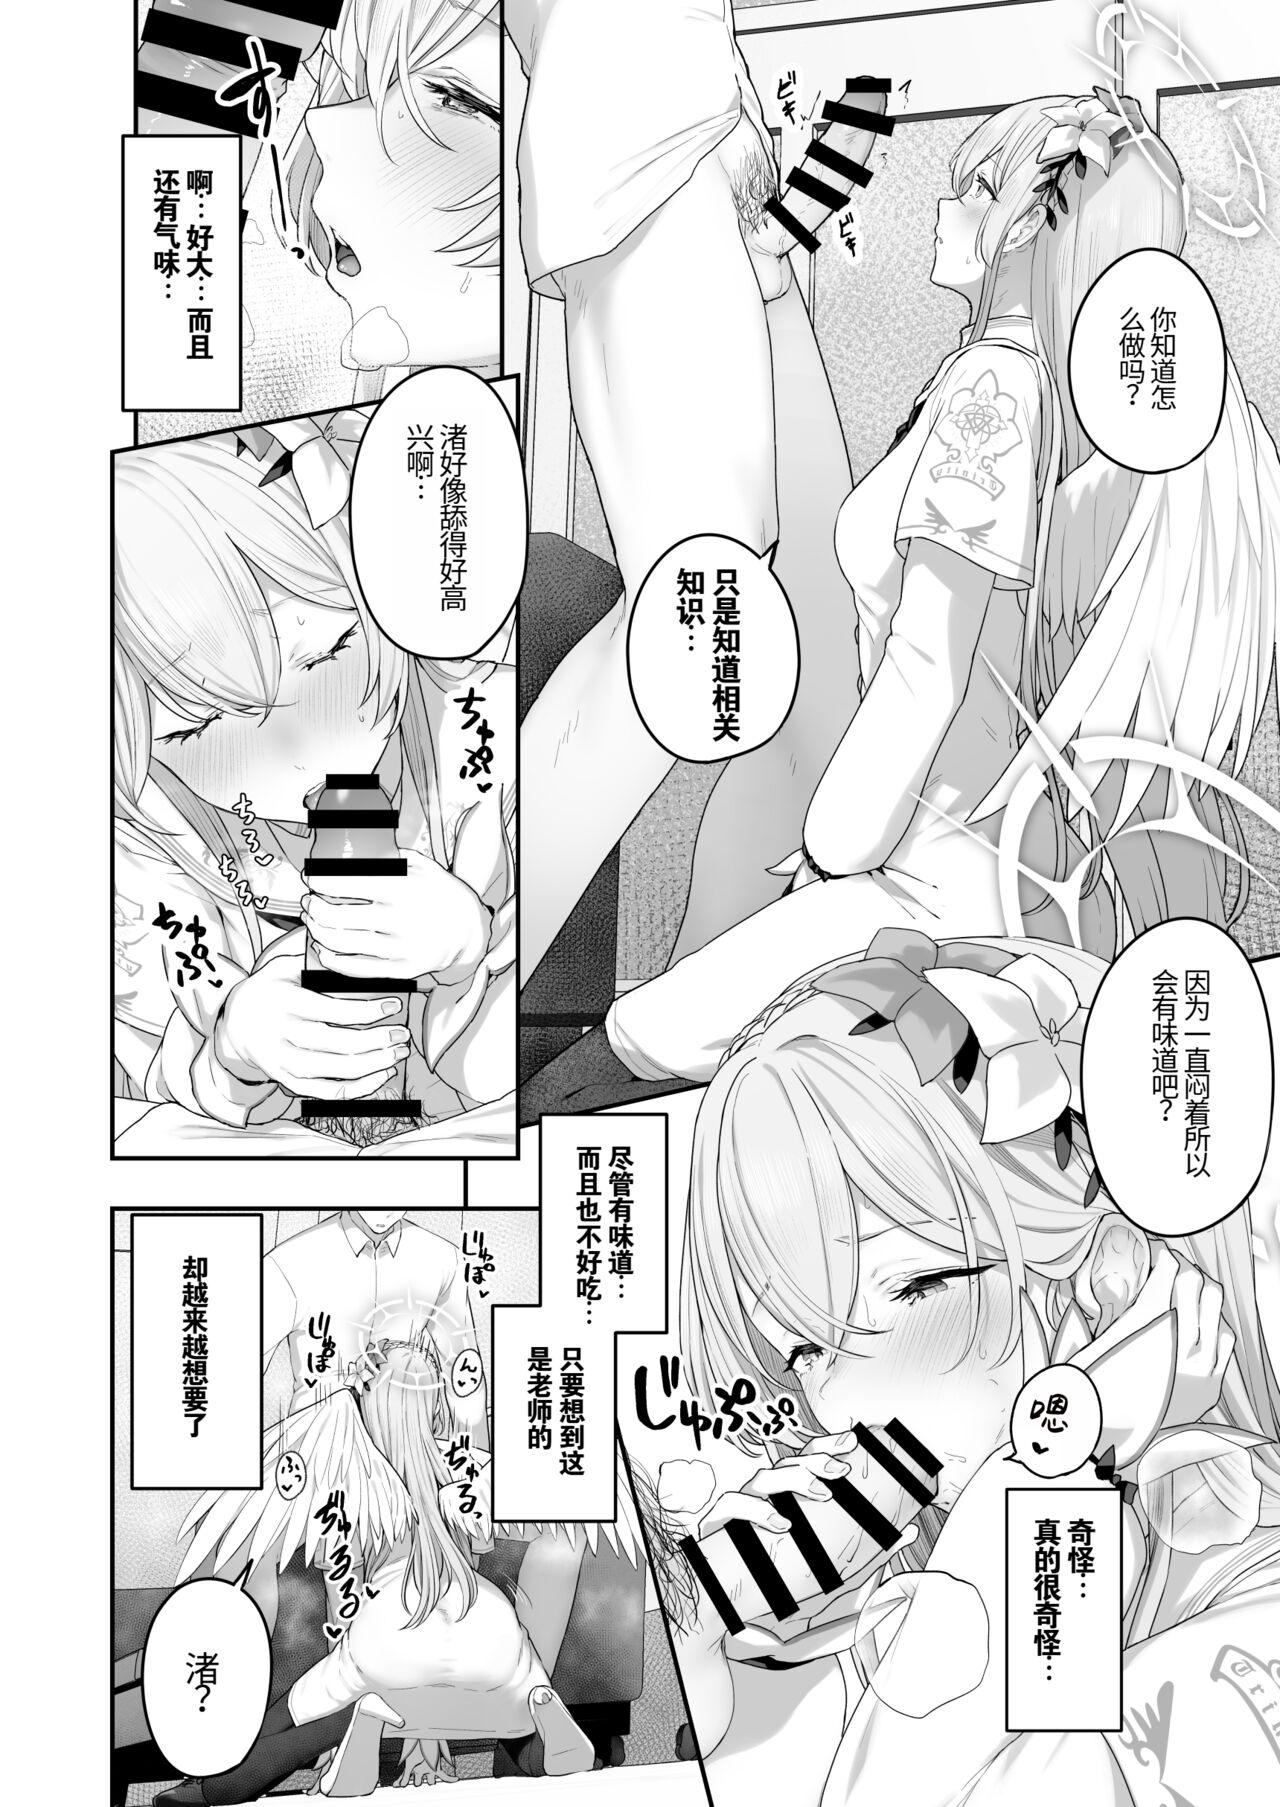 Hardcore Free Porn Kirifuji Nagisa Shinchoku 1-2 - Blue archive Homo - Page 8